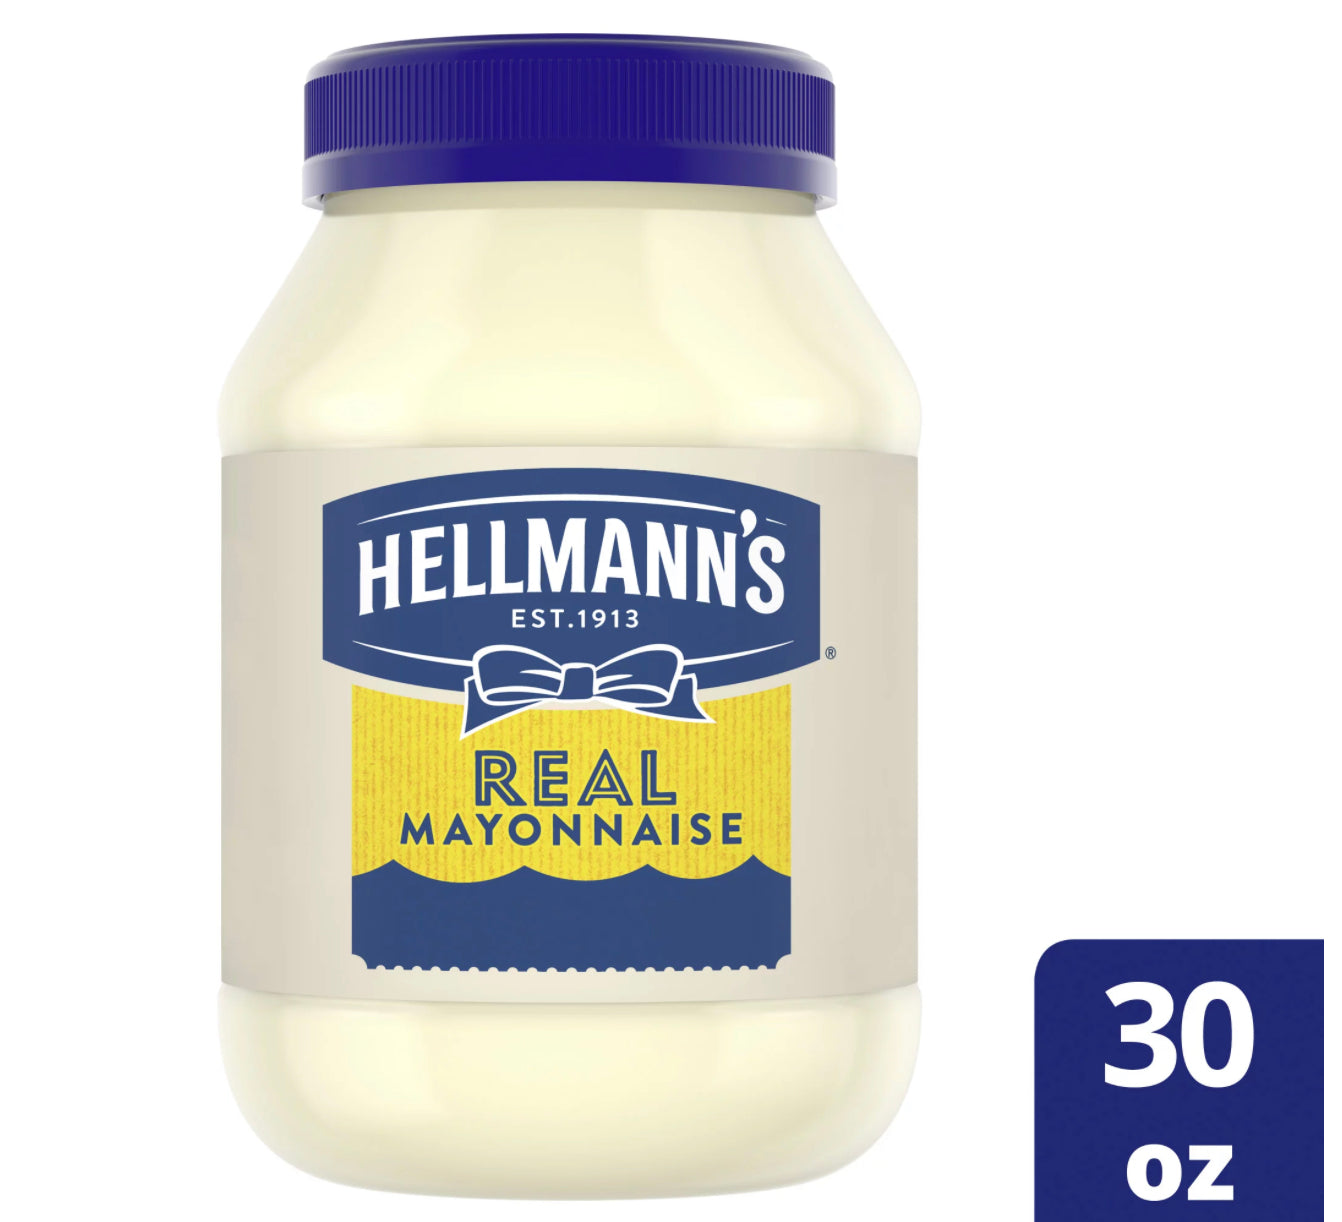 Hellmann's Real Mayonnaise 30oz